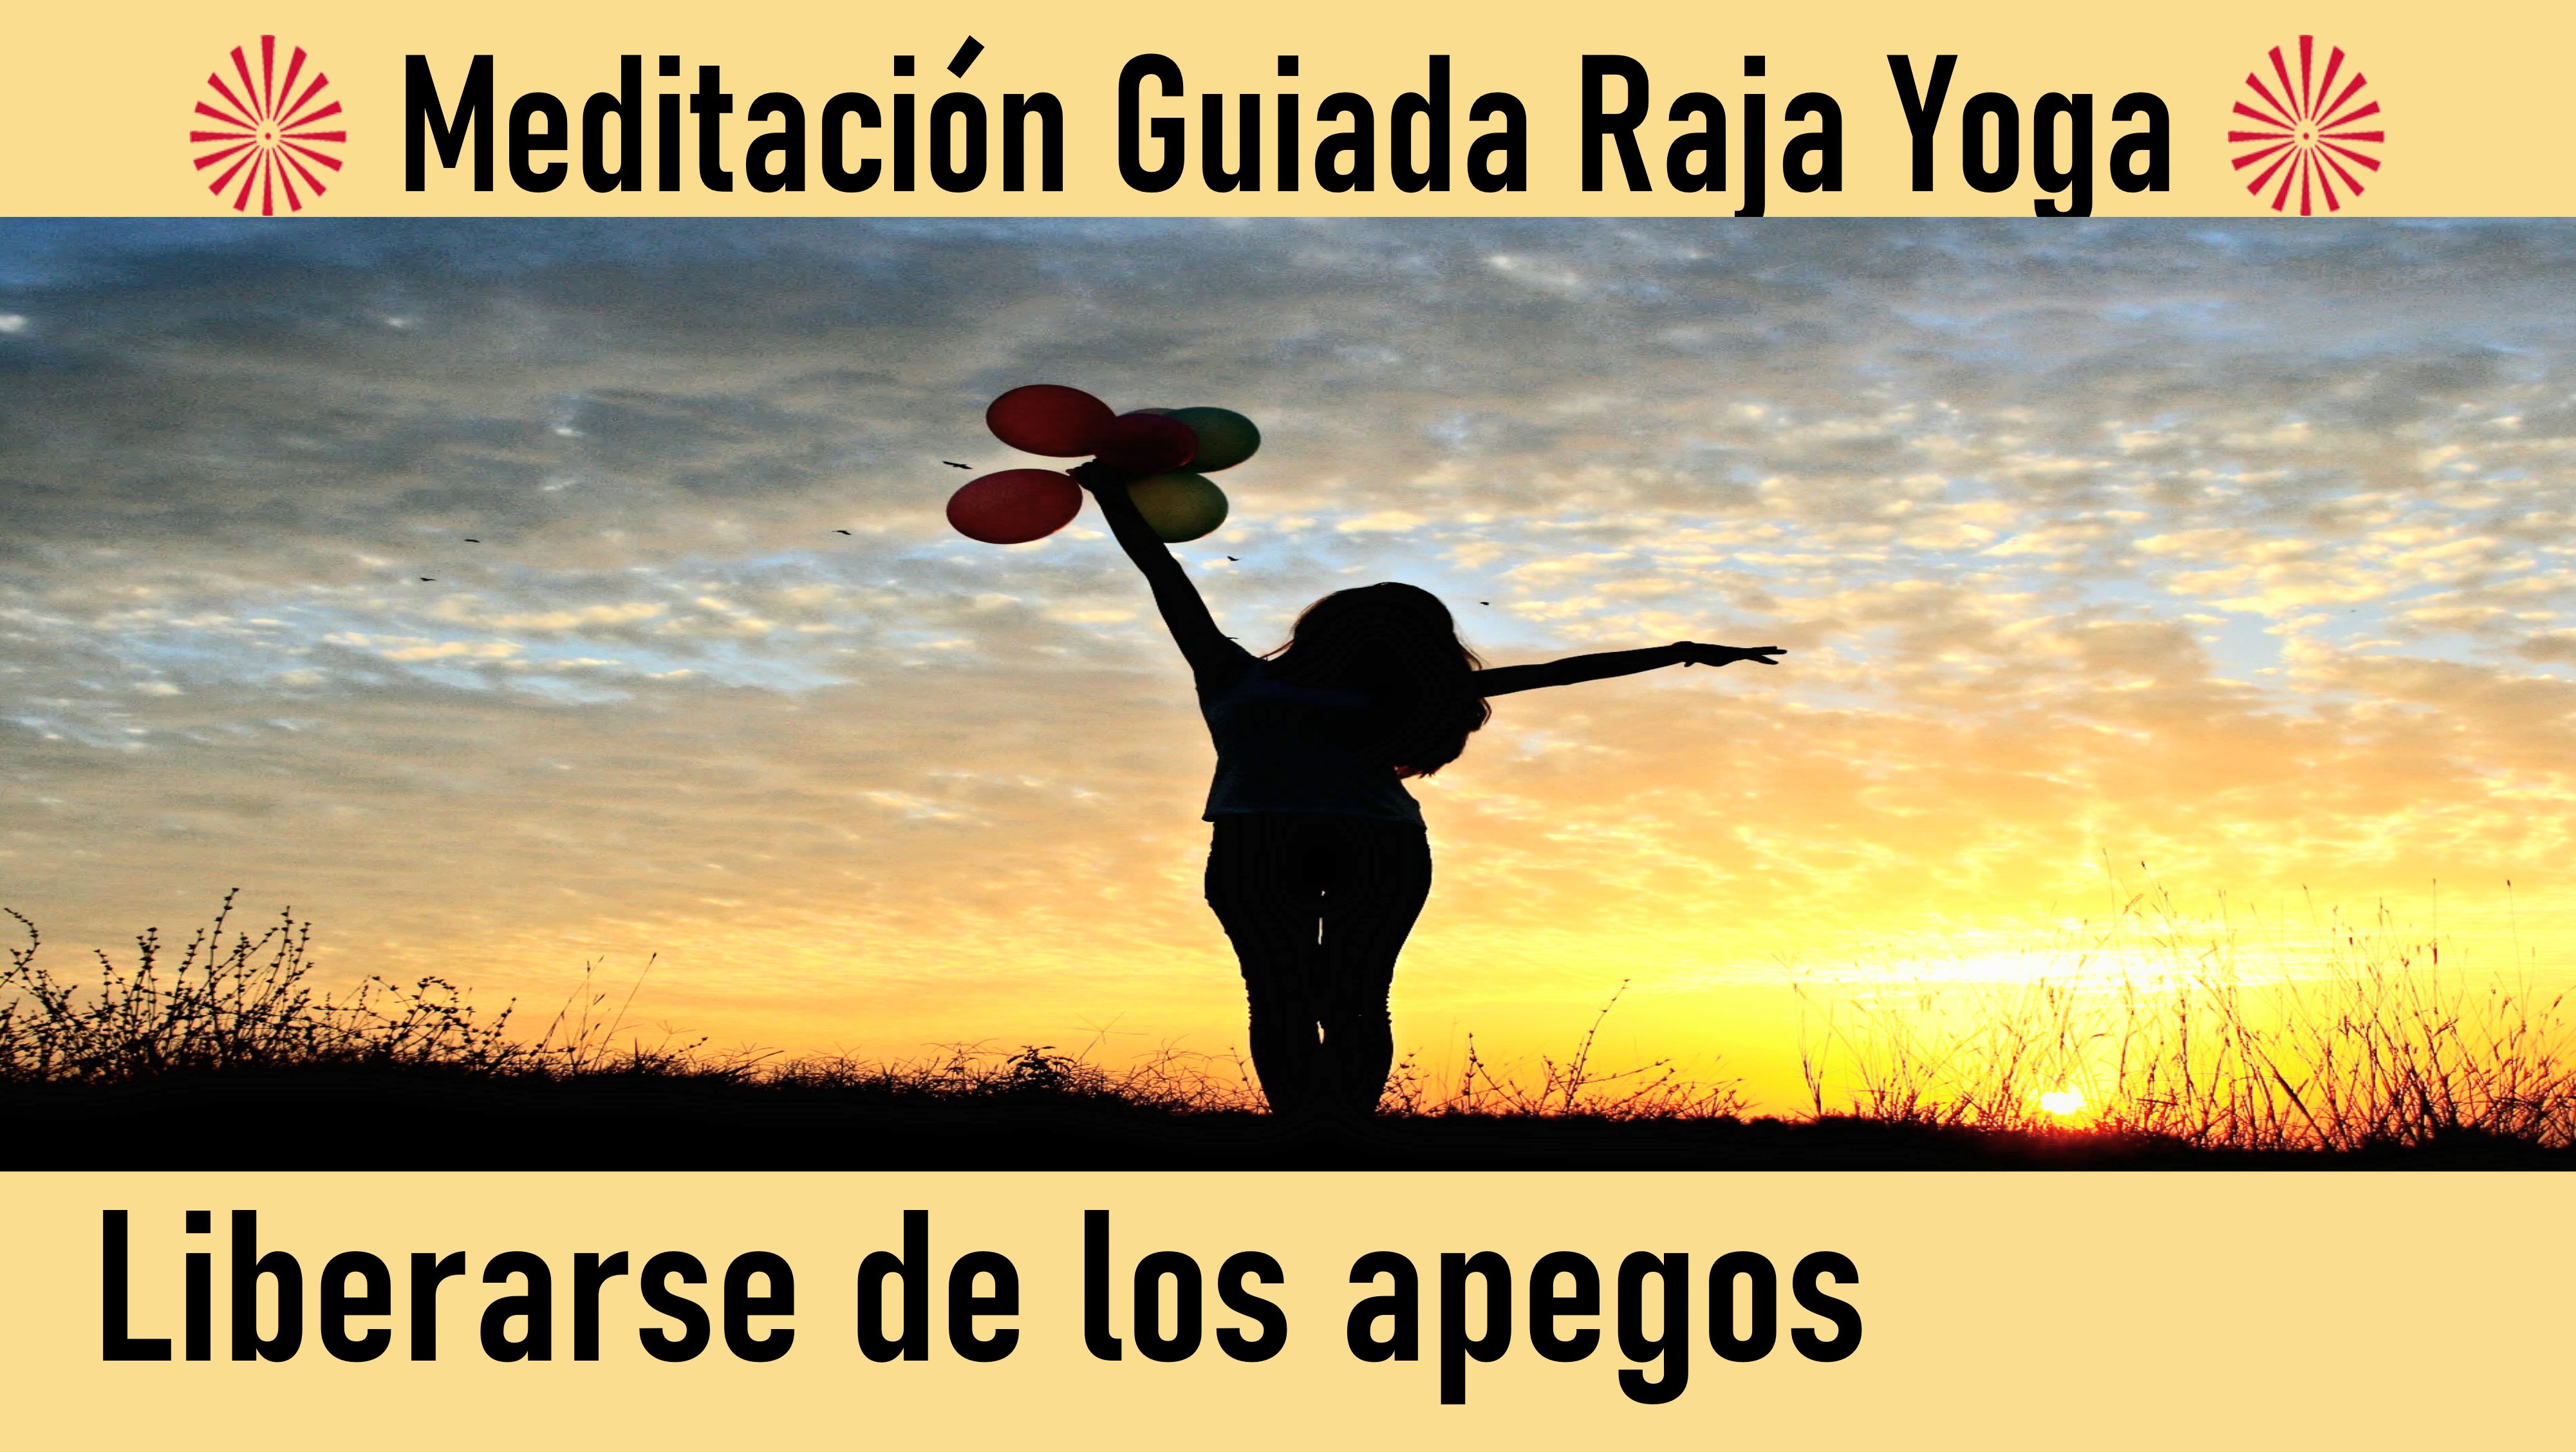 Meditación Raja Yoga : Liberarse de los apegos (24 Julio 2020) On-line desde Madrid